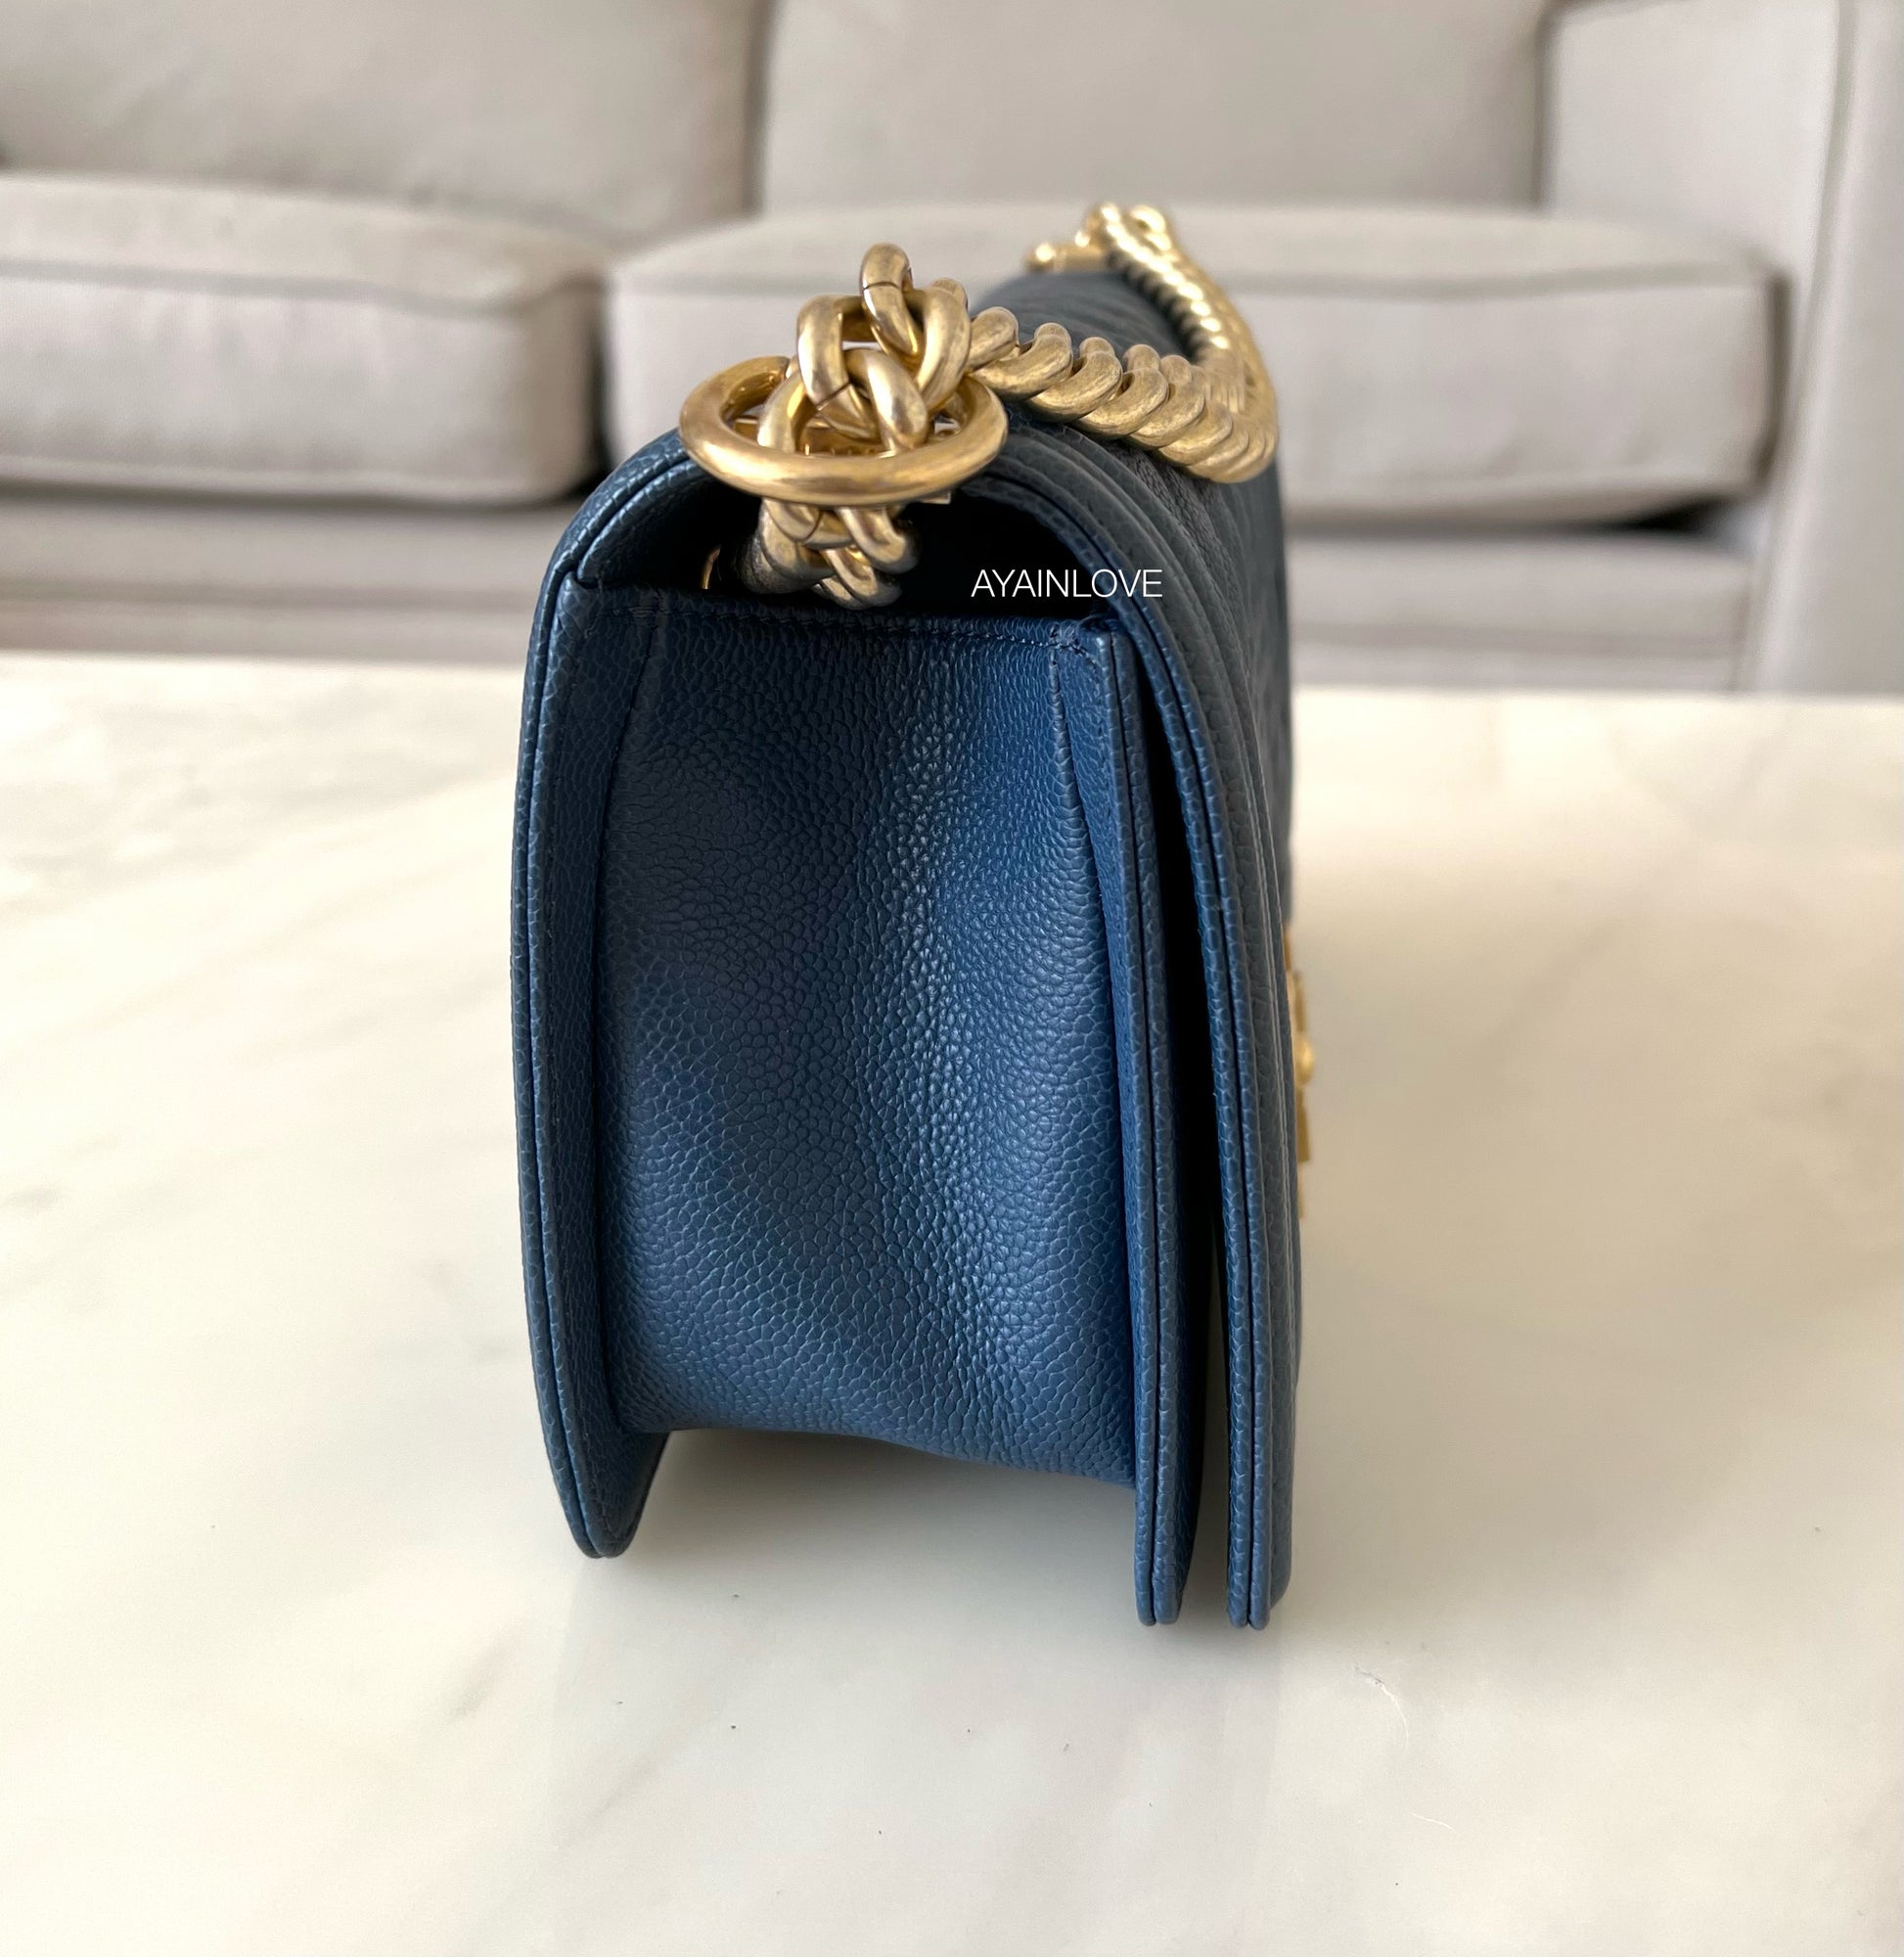 Chanel Light Blue Iridescent Calfskin Medium Boy Bag